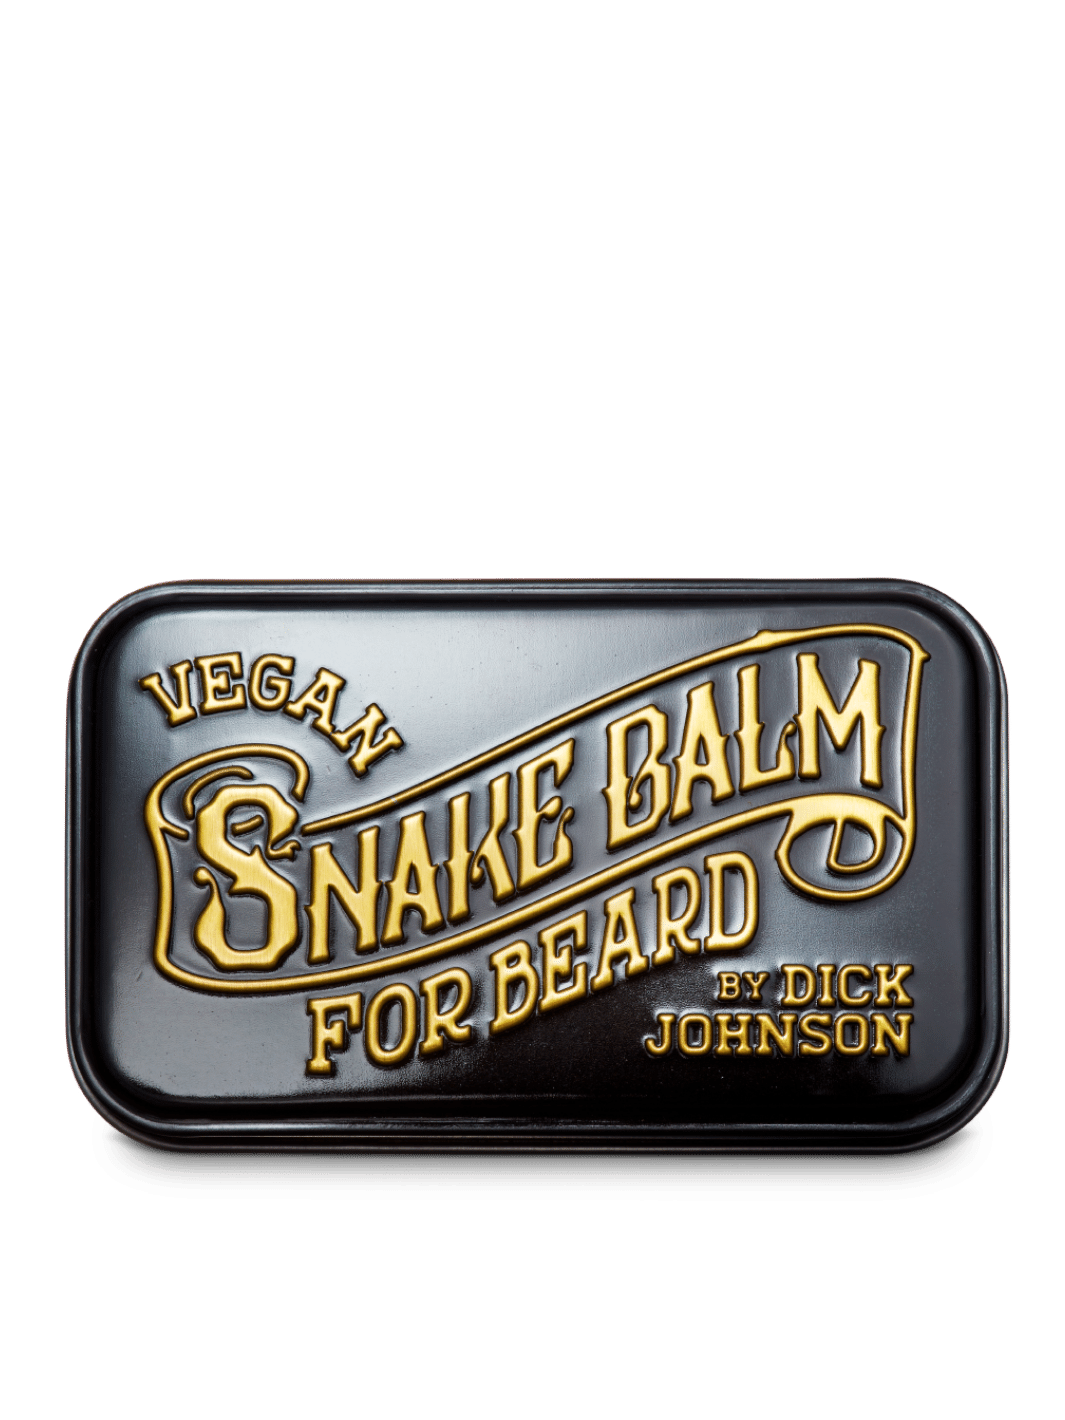 Dick Johnson Bartbalsam Snake Balm 55ml, angereichert mit natürlichen Ölen, pflegt und formt den Bart, jetzt bei Phullcutz für eine geschmeidige Bartpflege verfügbar.